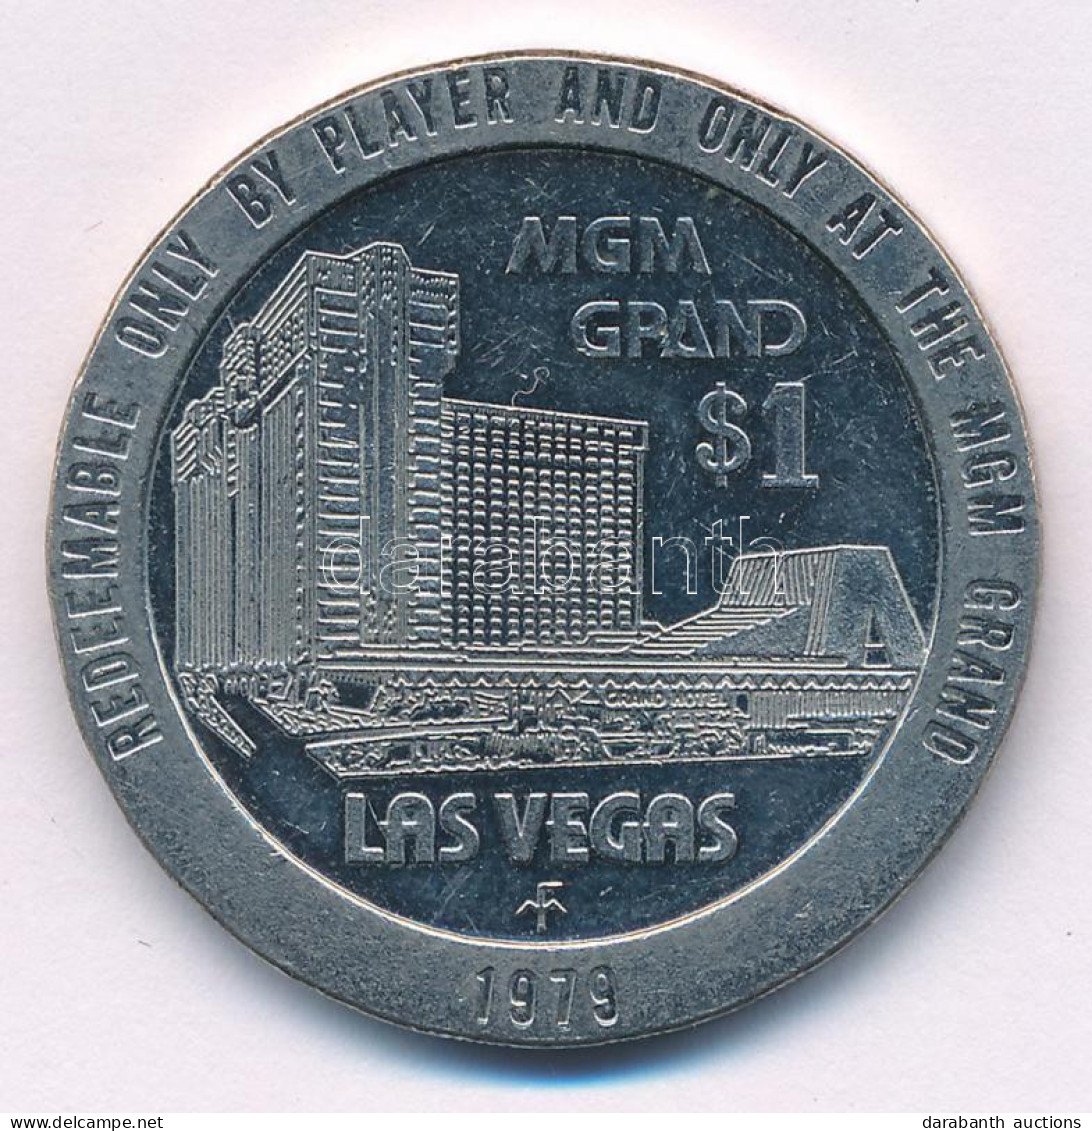 Amerikai Egyesült Államok / Las Vegas 1979. 1$ Fém MGM Kaszinó Zseton T:XF USA / Las Vegas 1979. 1 Dollar Metal MGM Casi - Unclassified